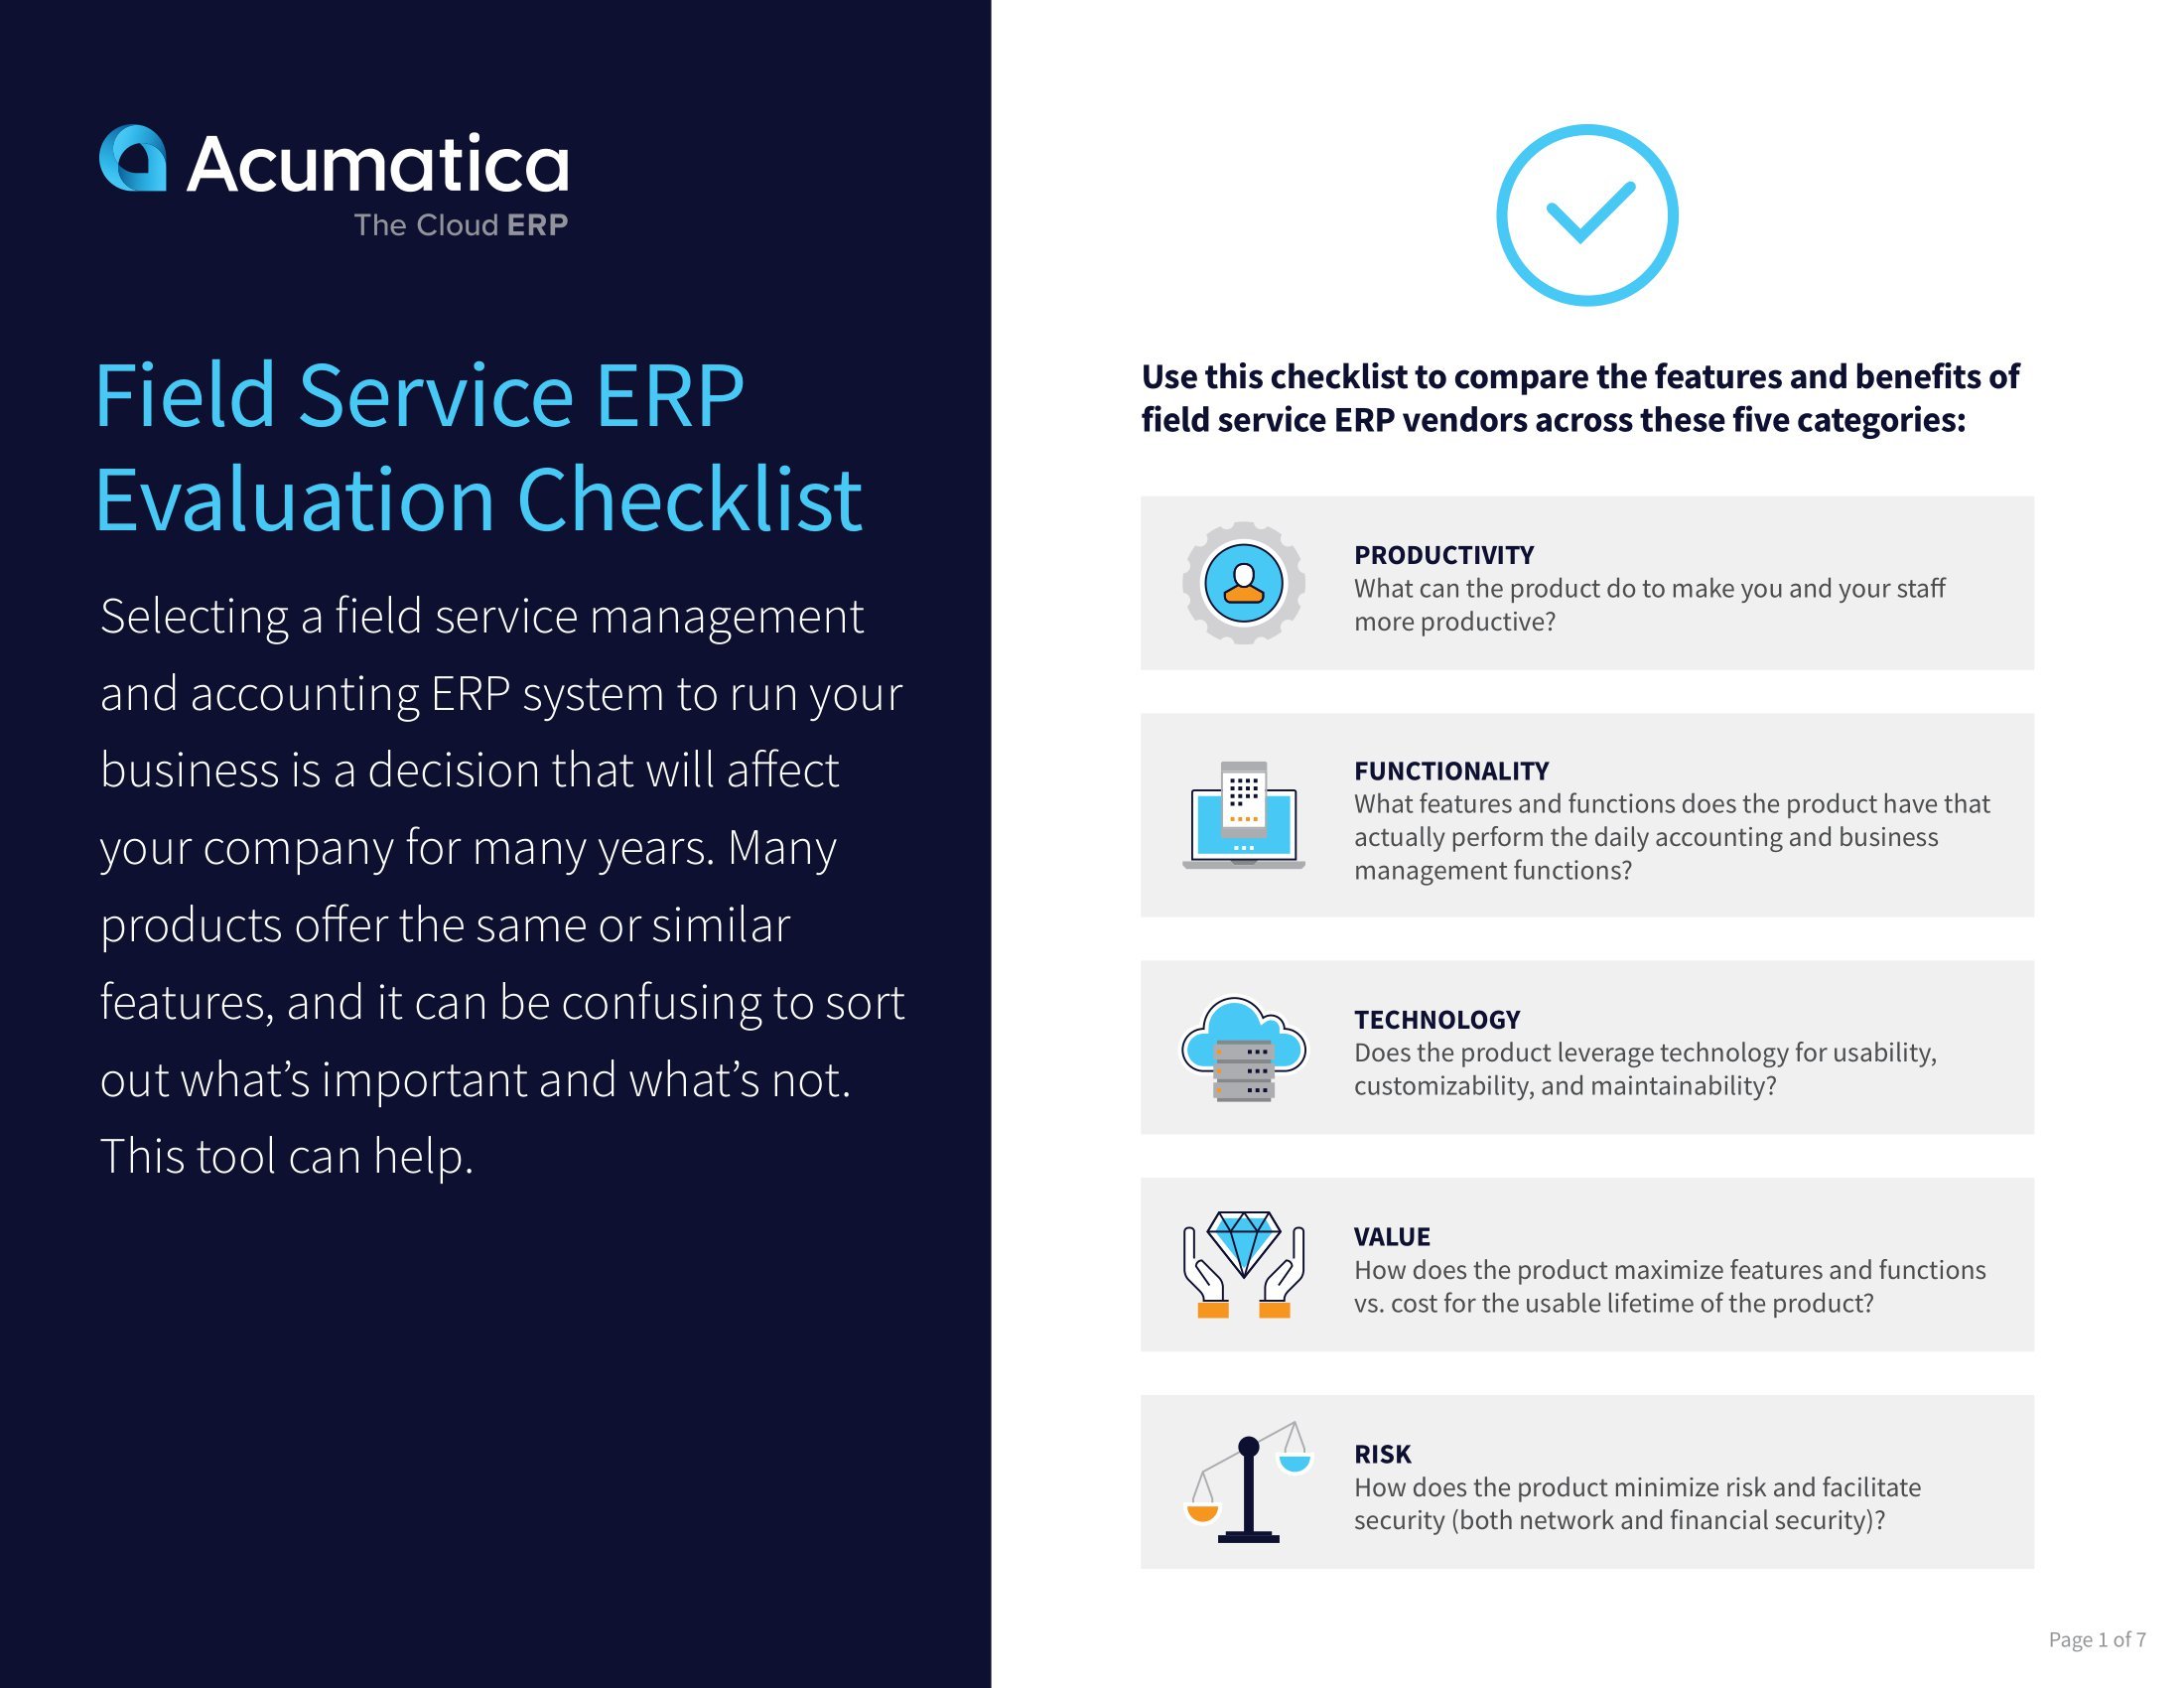 ERP para servicios de campo: ¿Cómo funciona su solución?